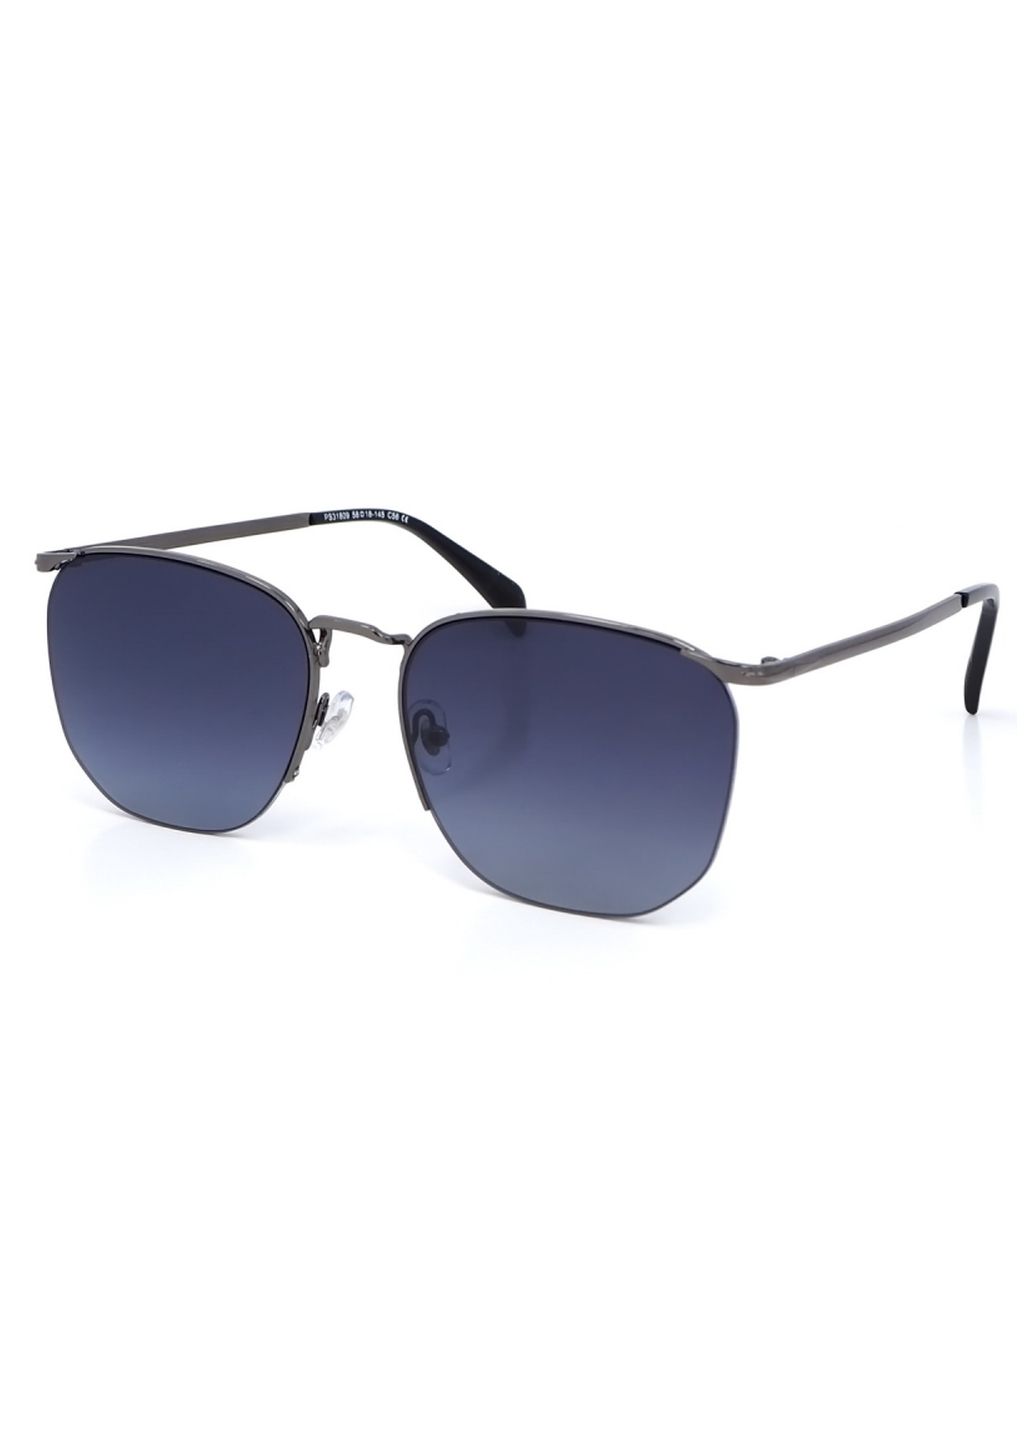 Купить Женские солнцезащитные очки Merlini с поляризацией S31809P 117015 - Черный в интернет-магазине